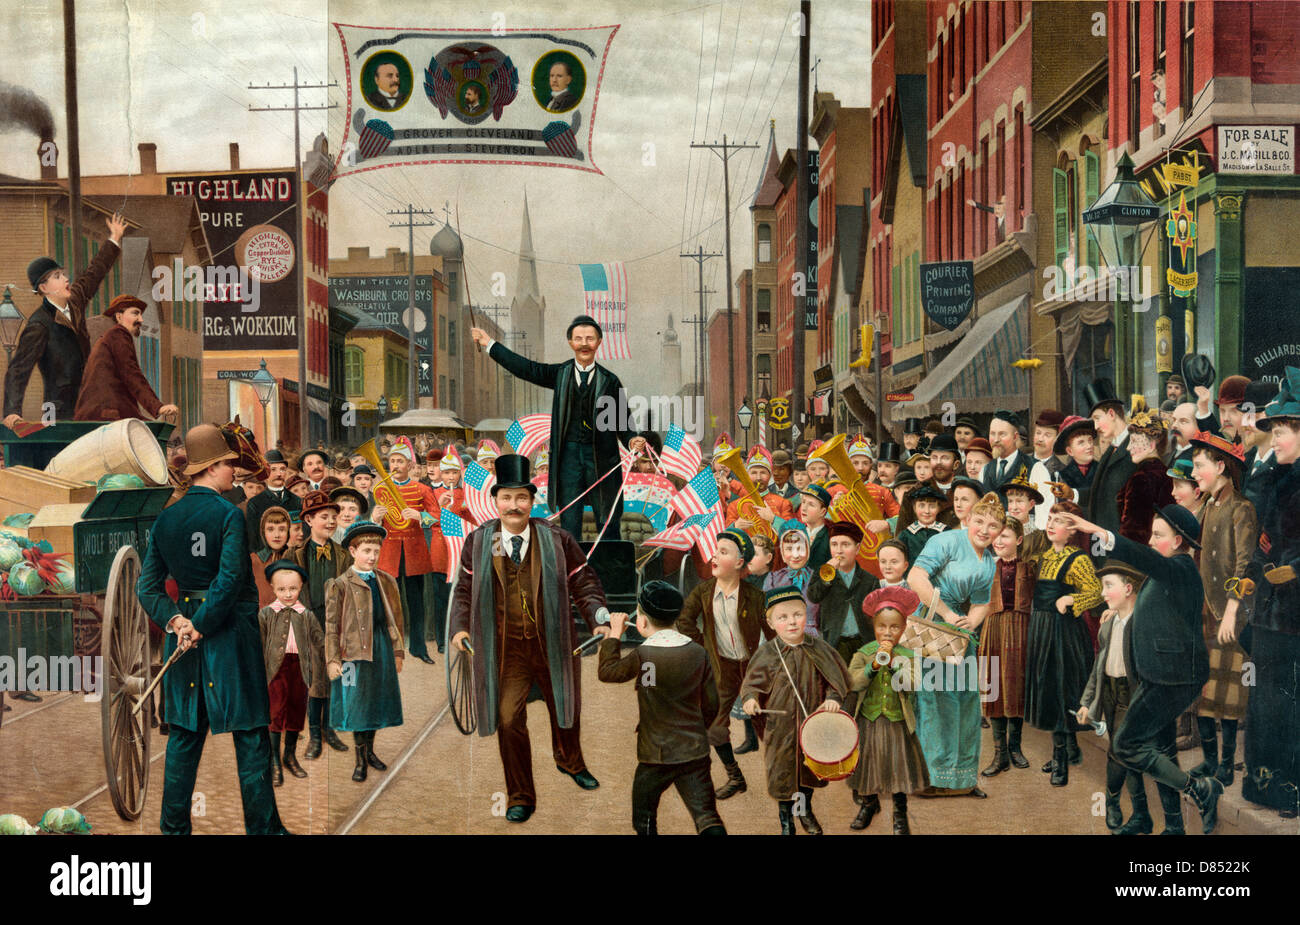 Le pari perdu - Parade avec la bannière montrant tête-et-épaules portraits de Grover Cleveland, Adlai E. Stevenson, et le Gouverneur John Peter Altgeld. 1893 Banque D'Images